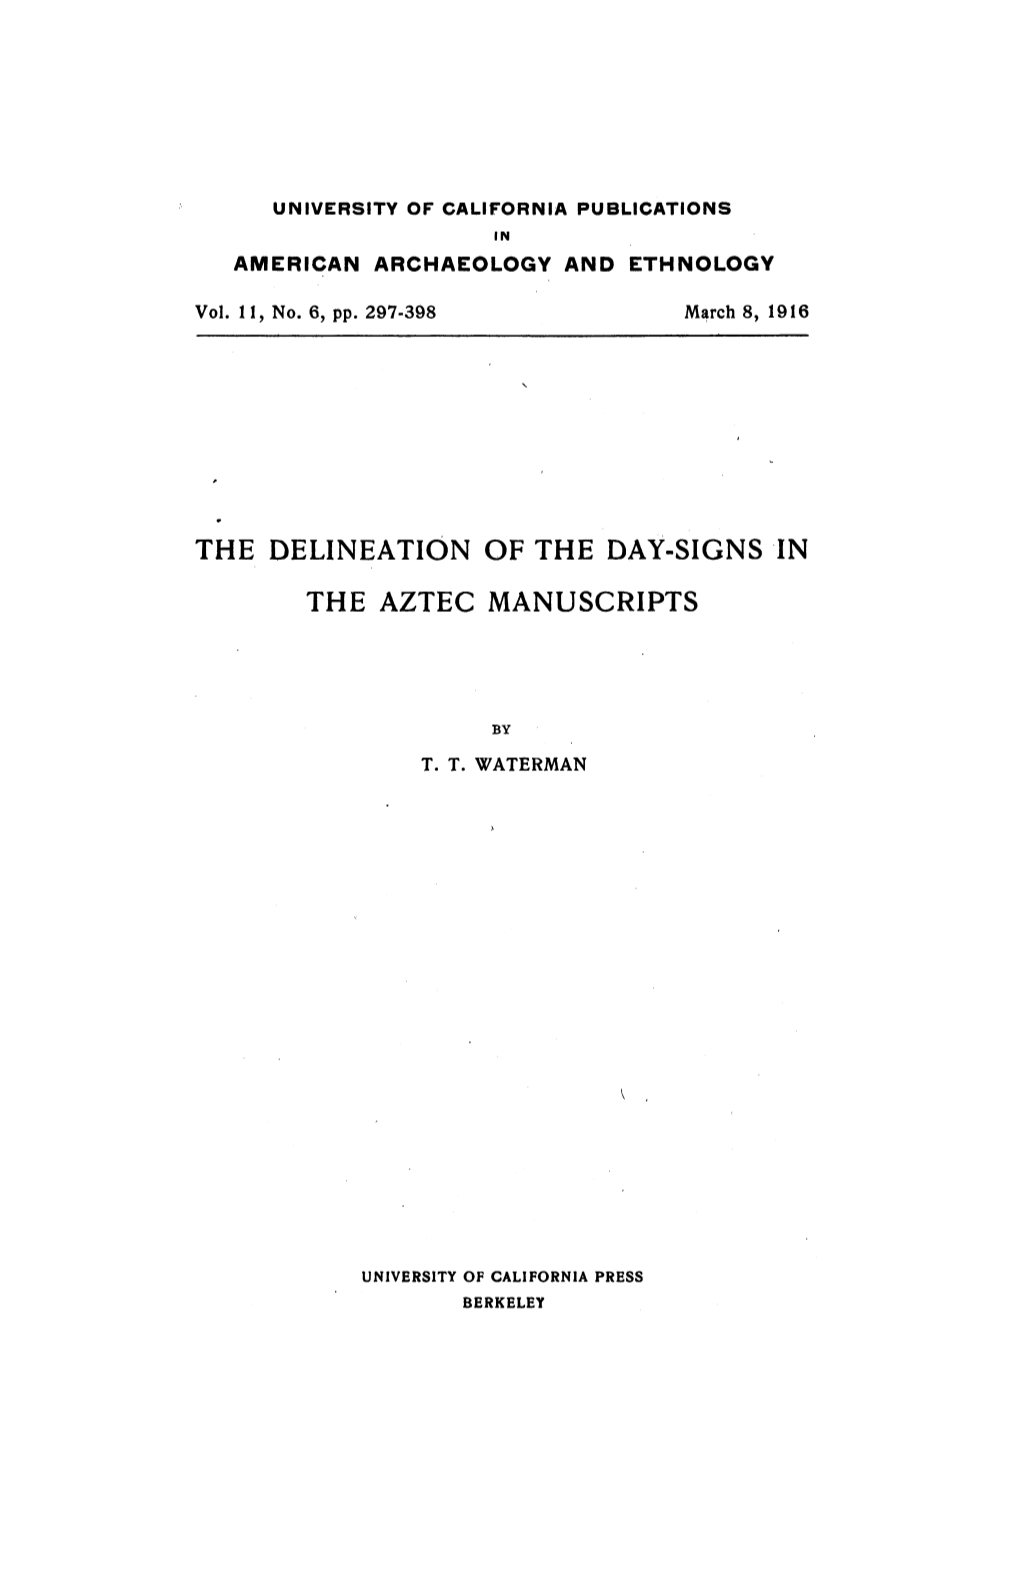 The Aztec Manuscripts